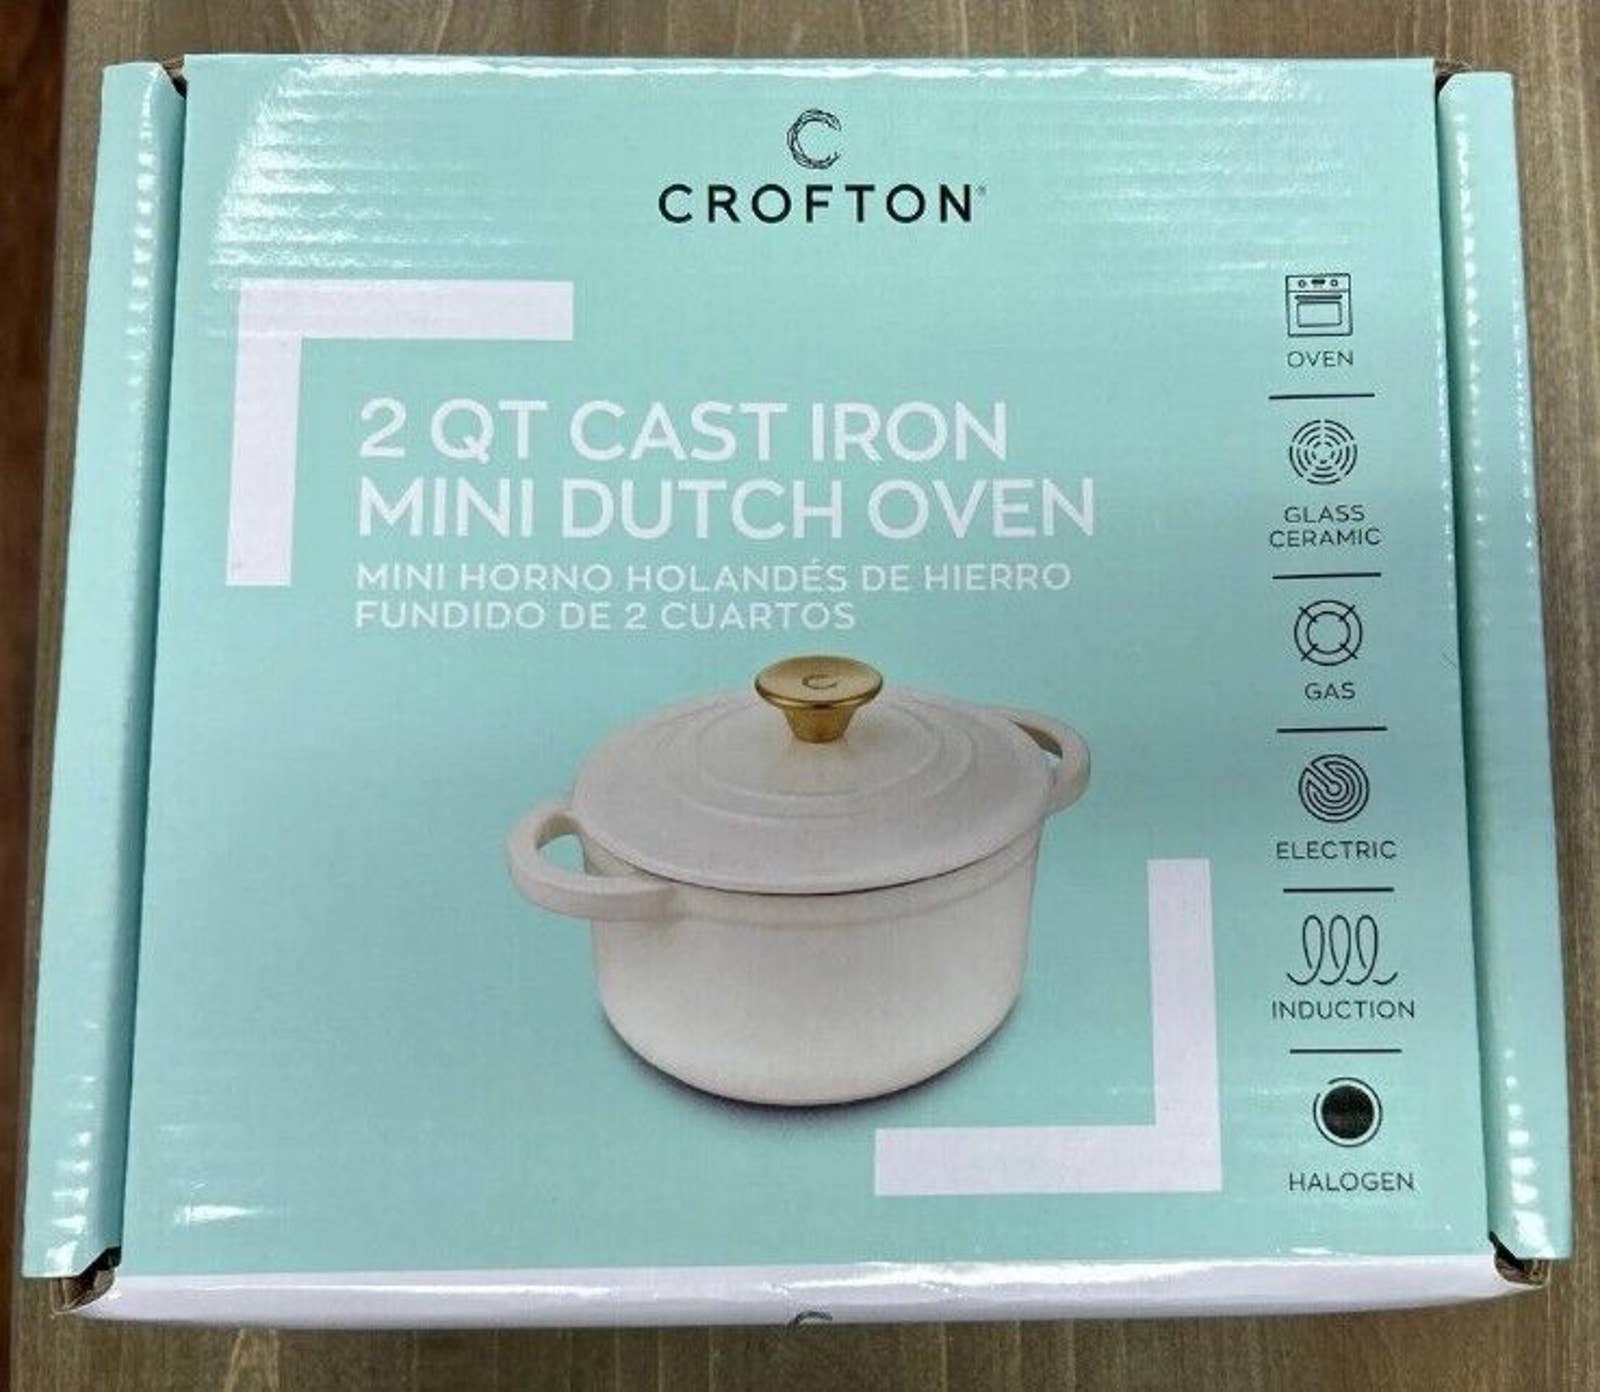 Crofton 2 Qt Cast Iron Mini Dutch Oven - White